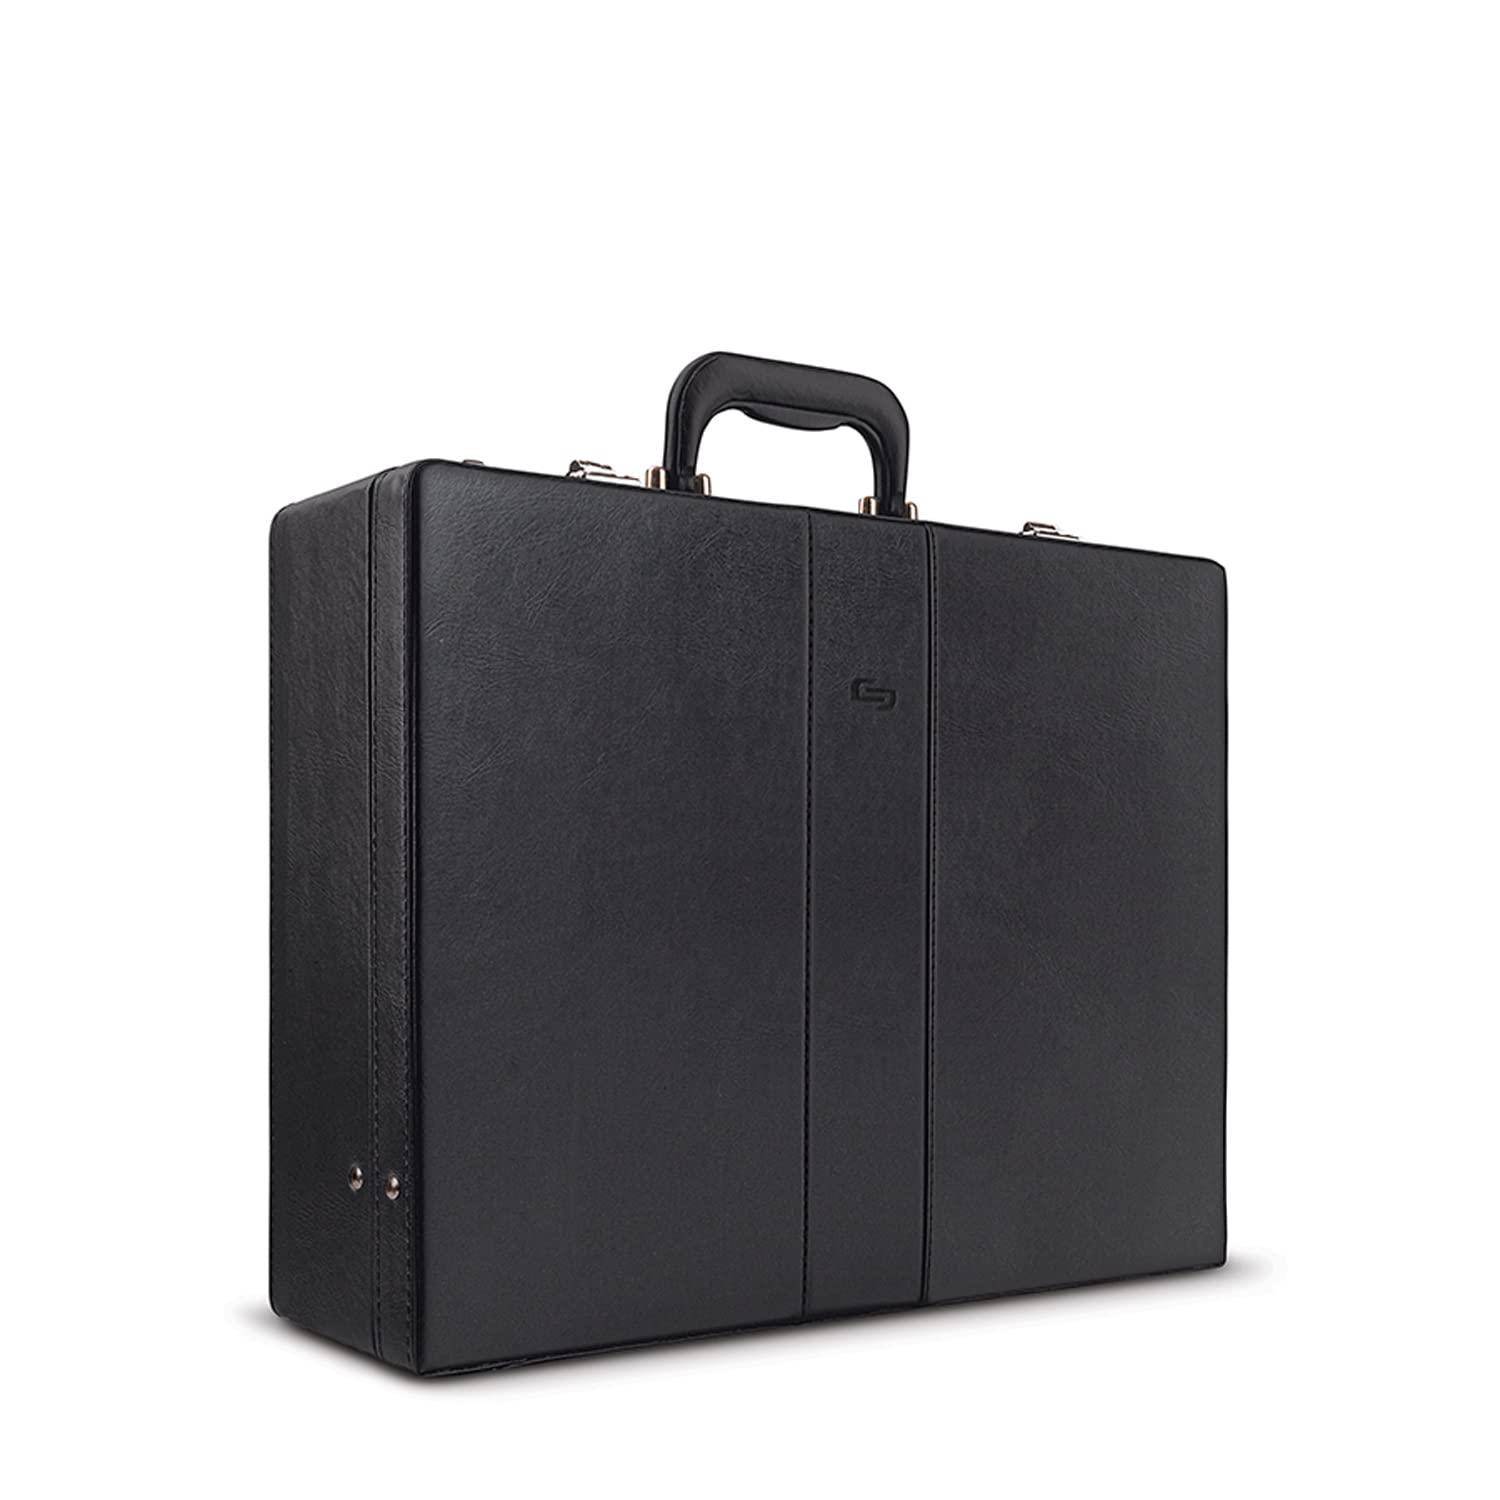 Solo Grand Central Attaché Briefcase with Combination Locks, Black